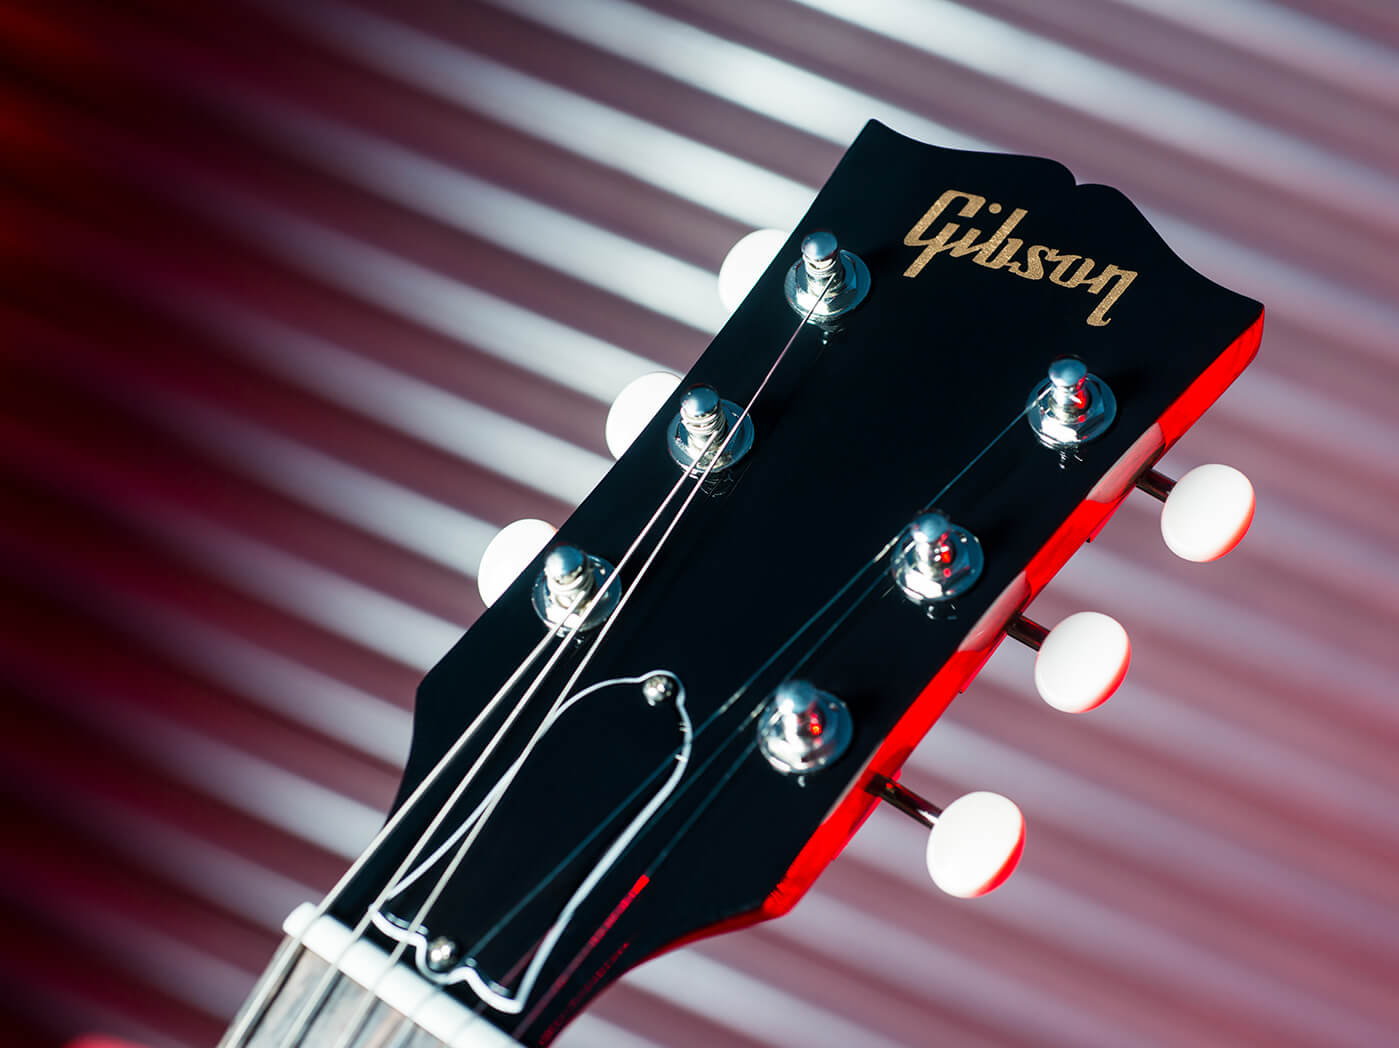 Gibson SG 2019